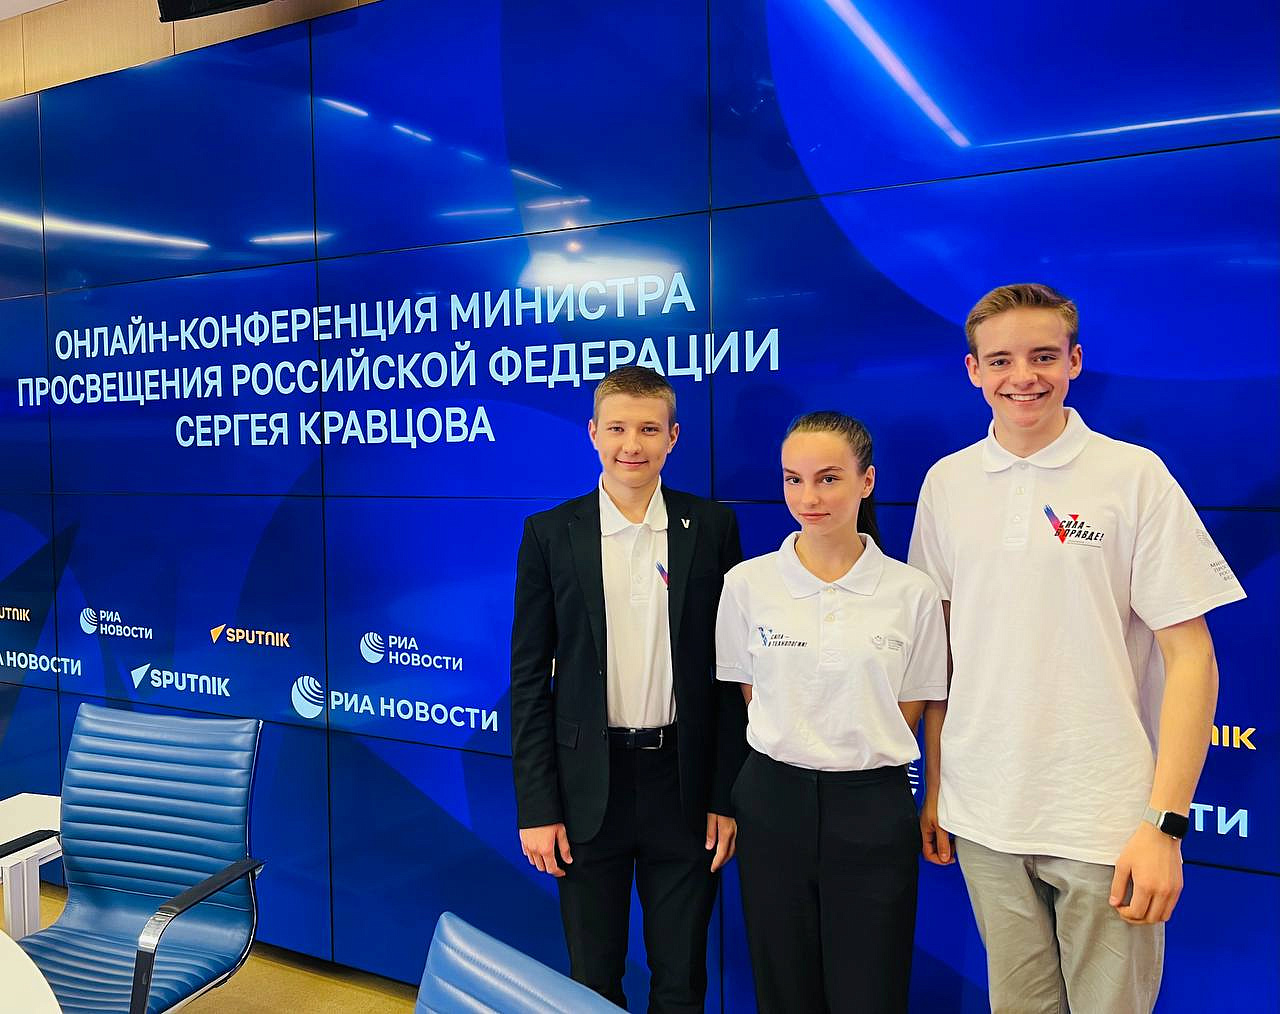 Школьная дума ГБОУ №1409 встретилась онлайн с министром Кравцовым